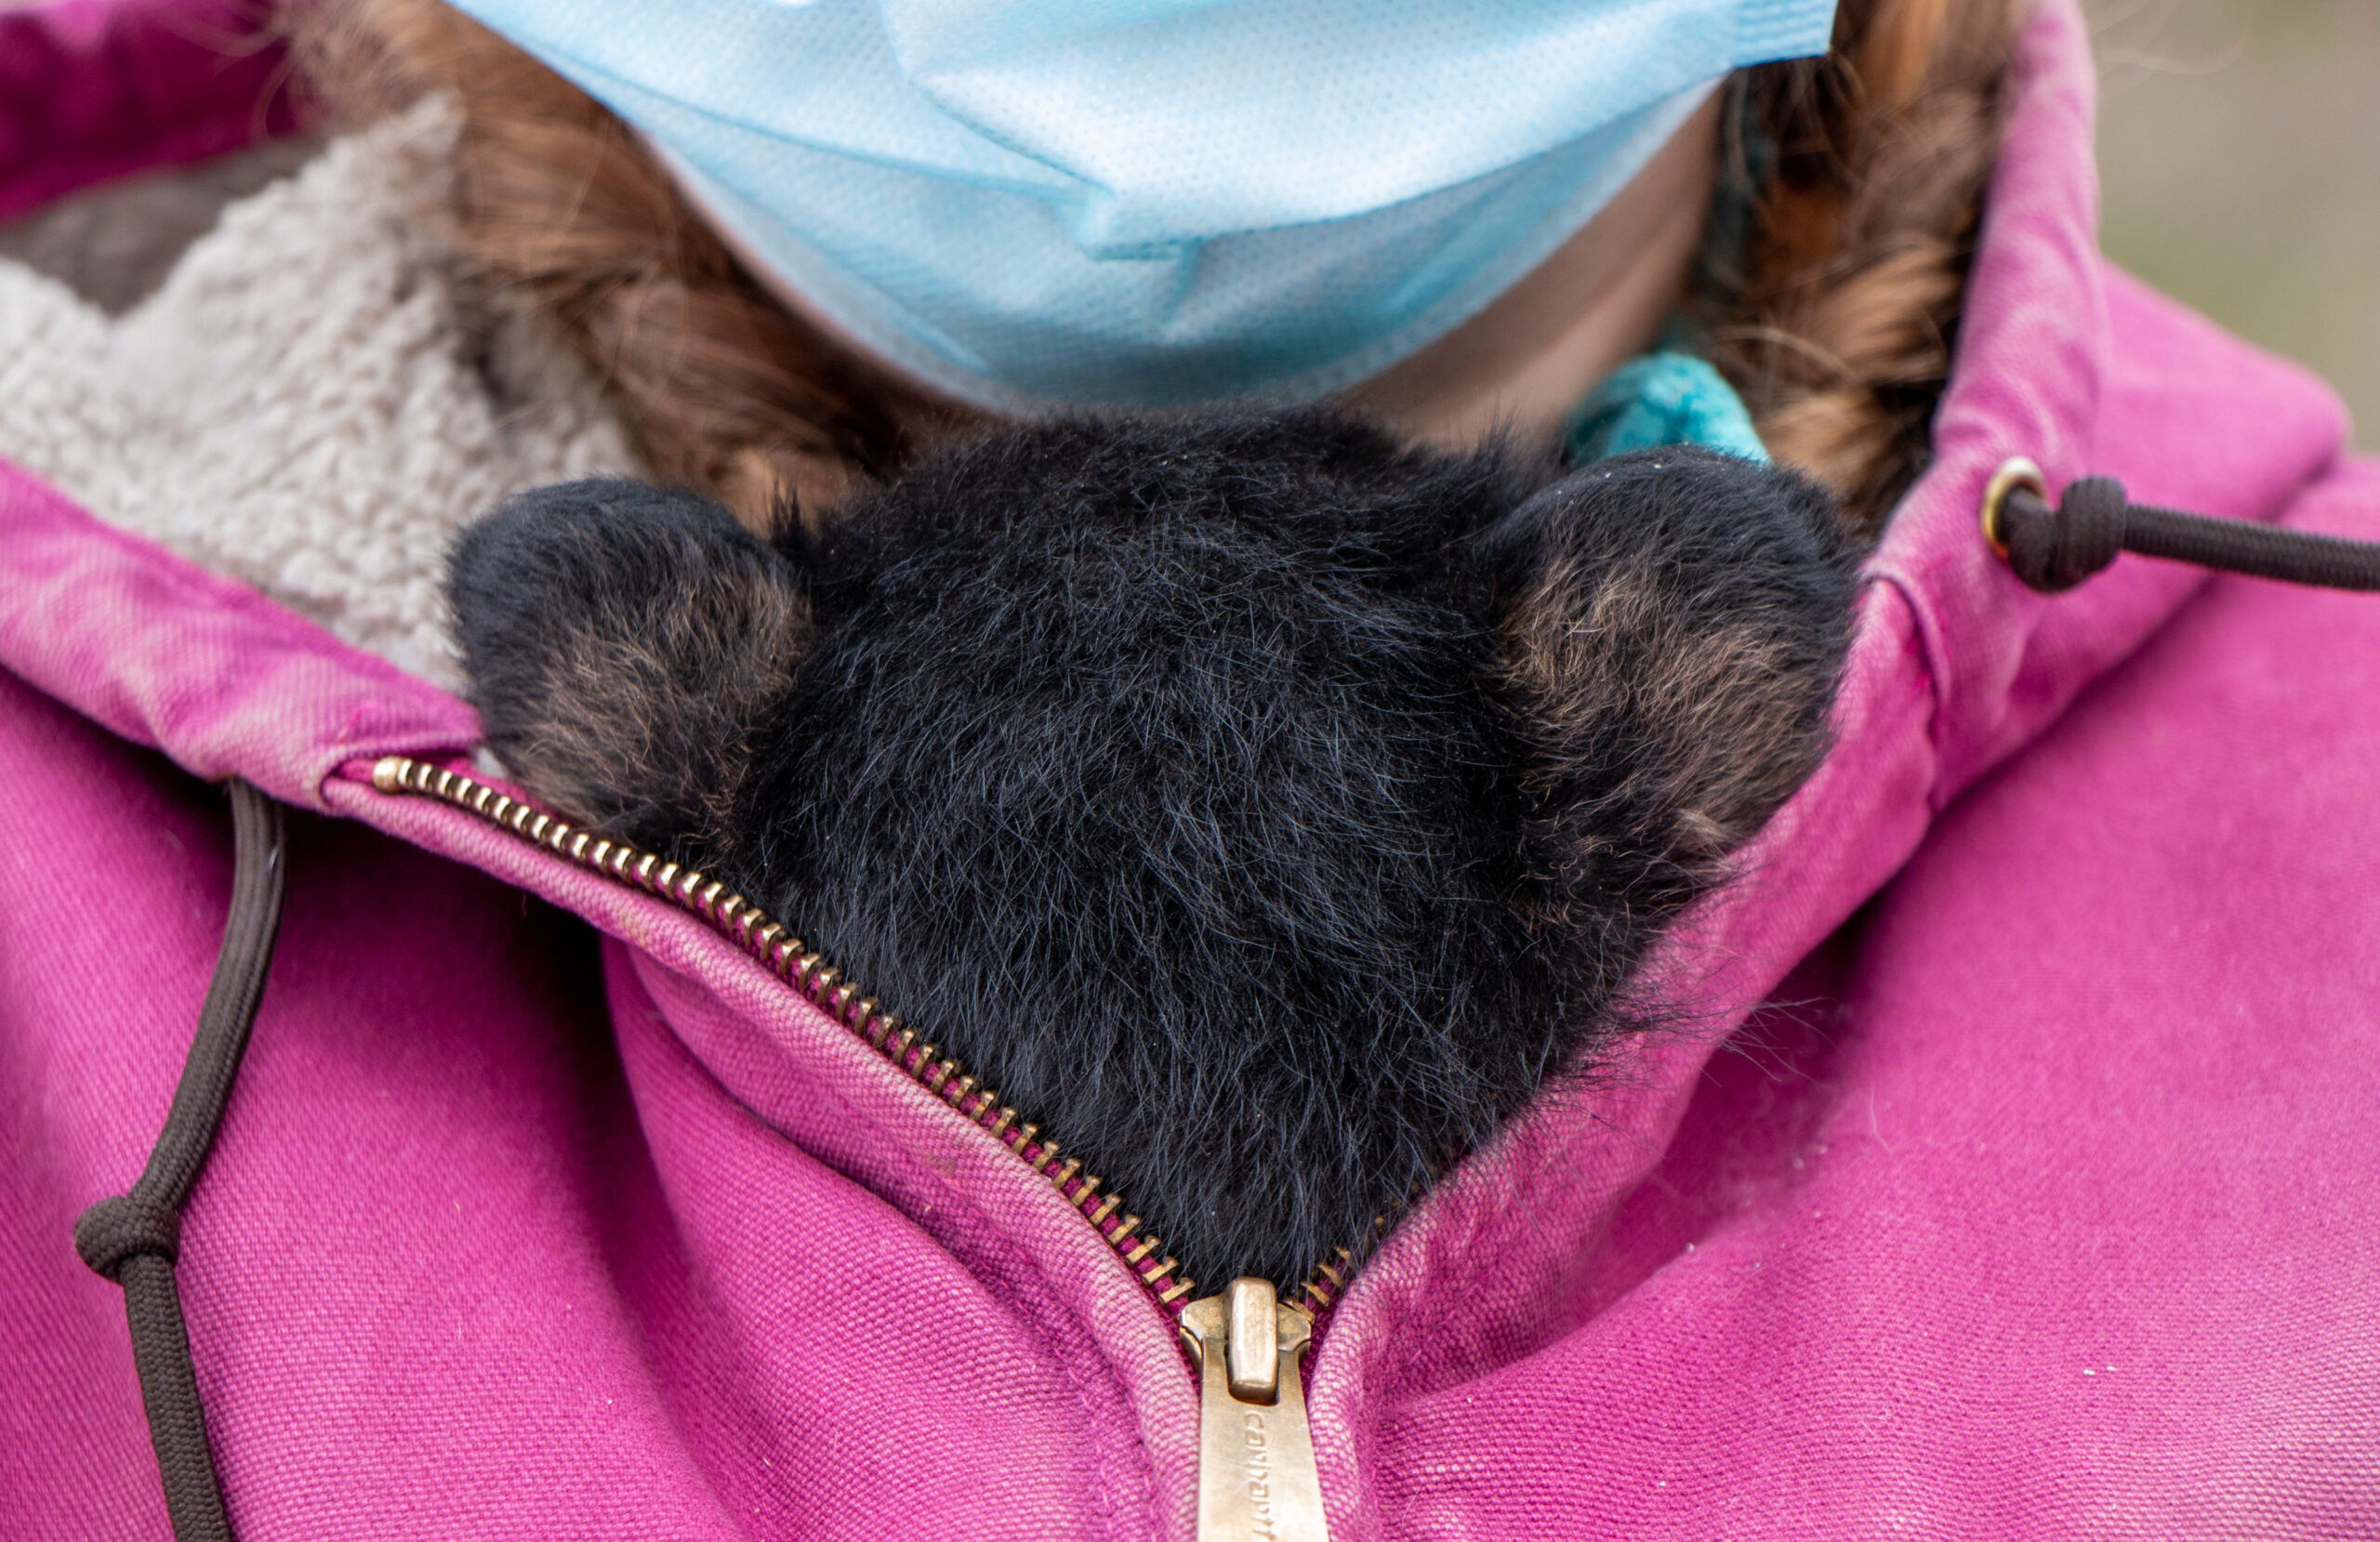 Bear cub being kept warm